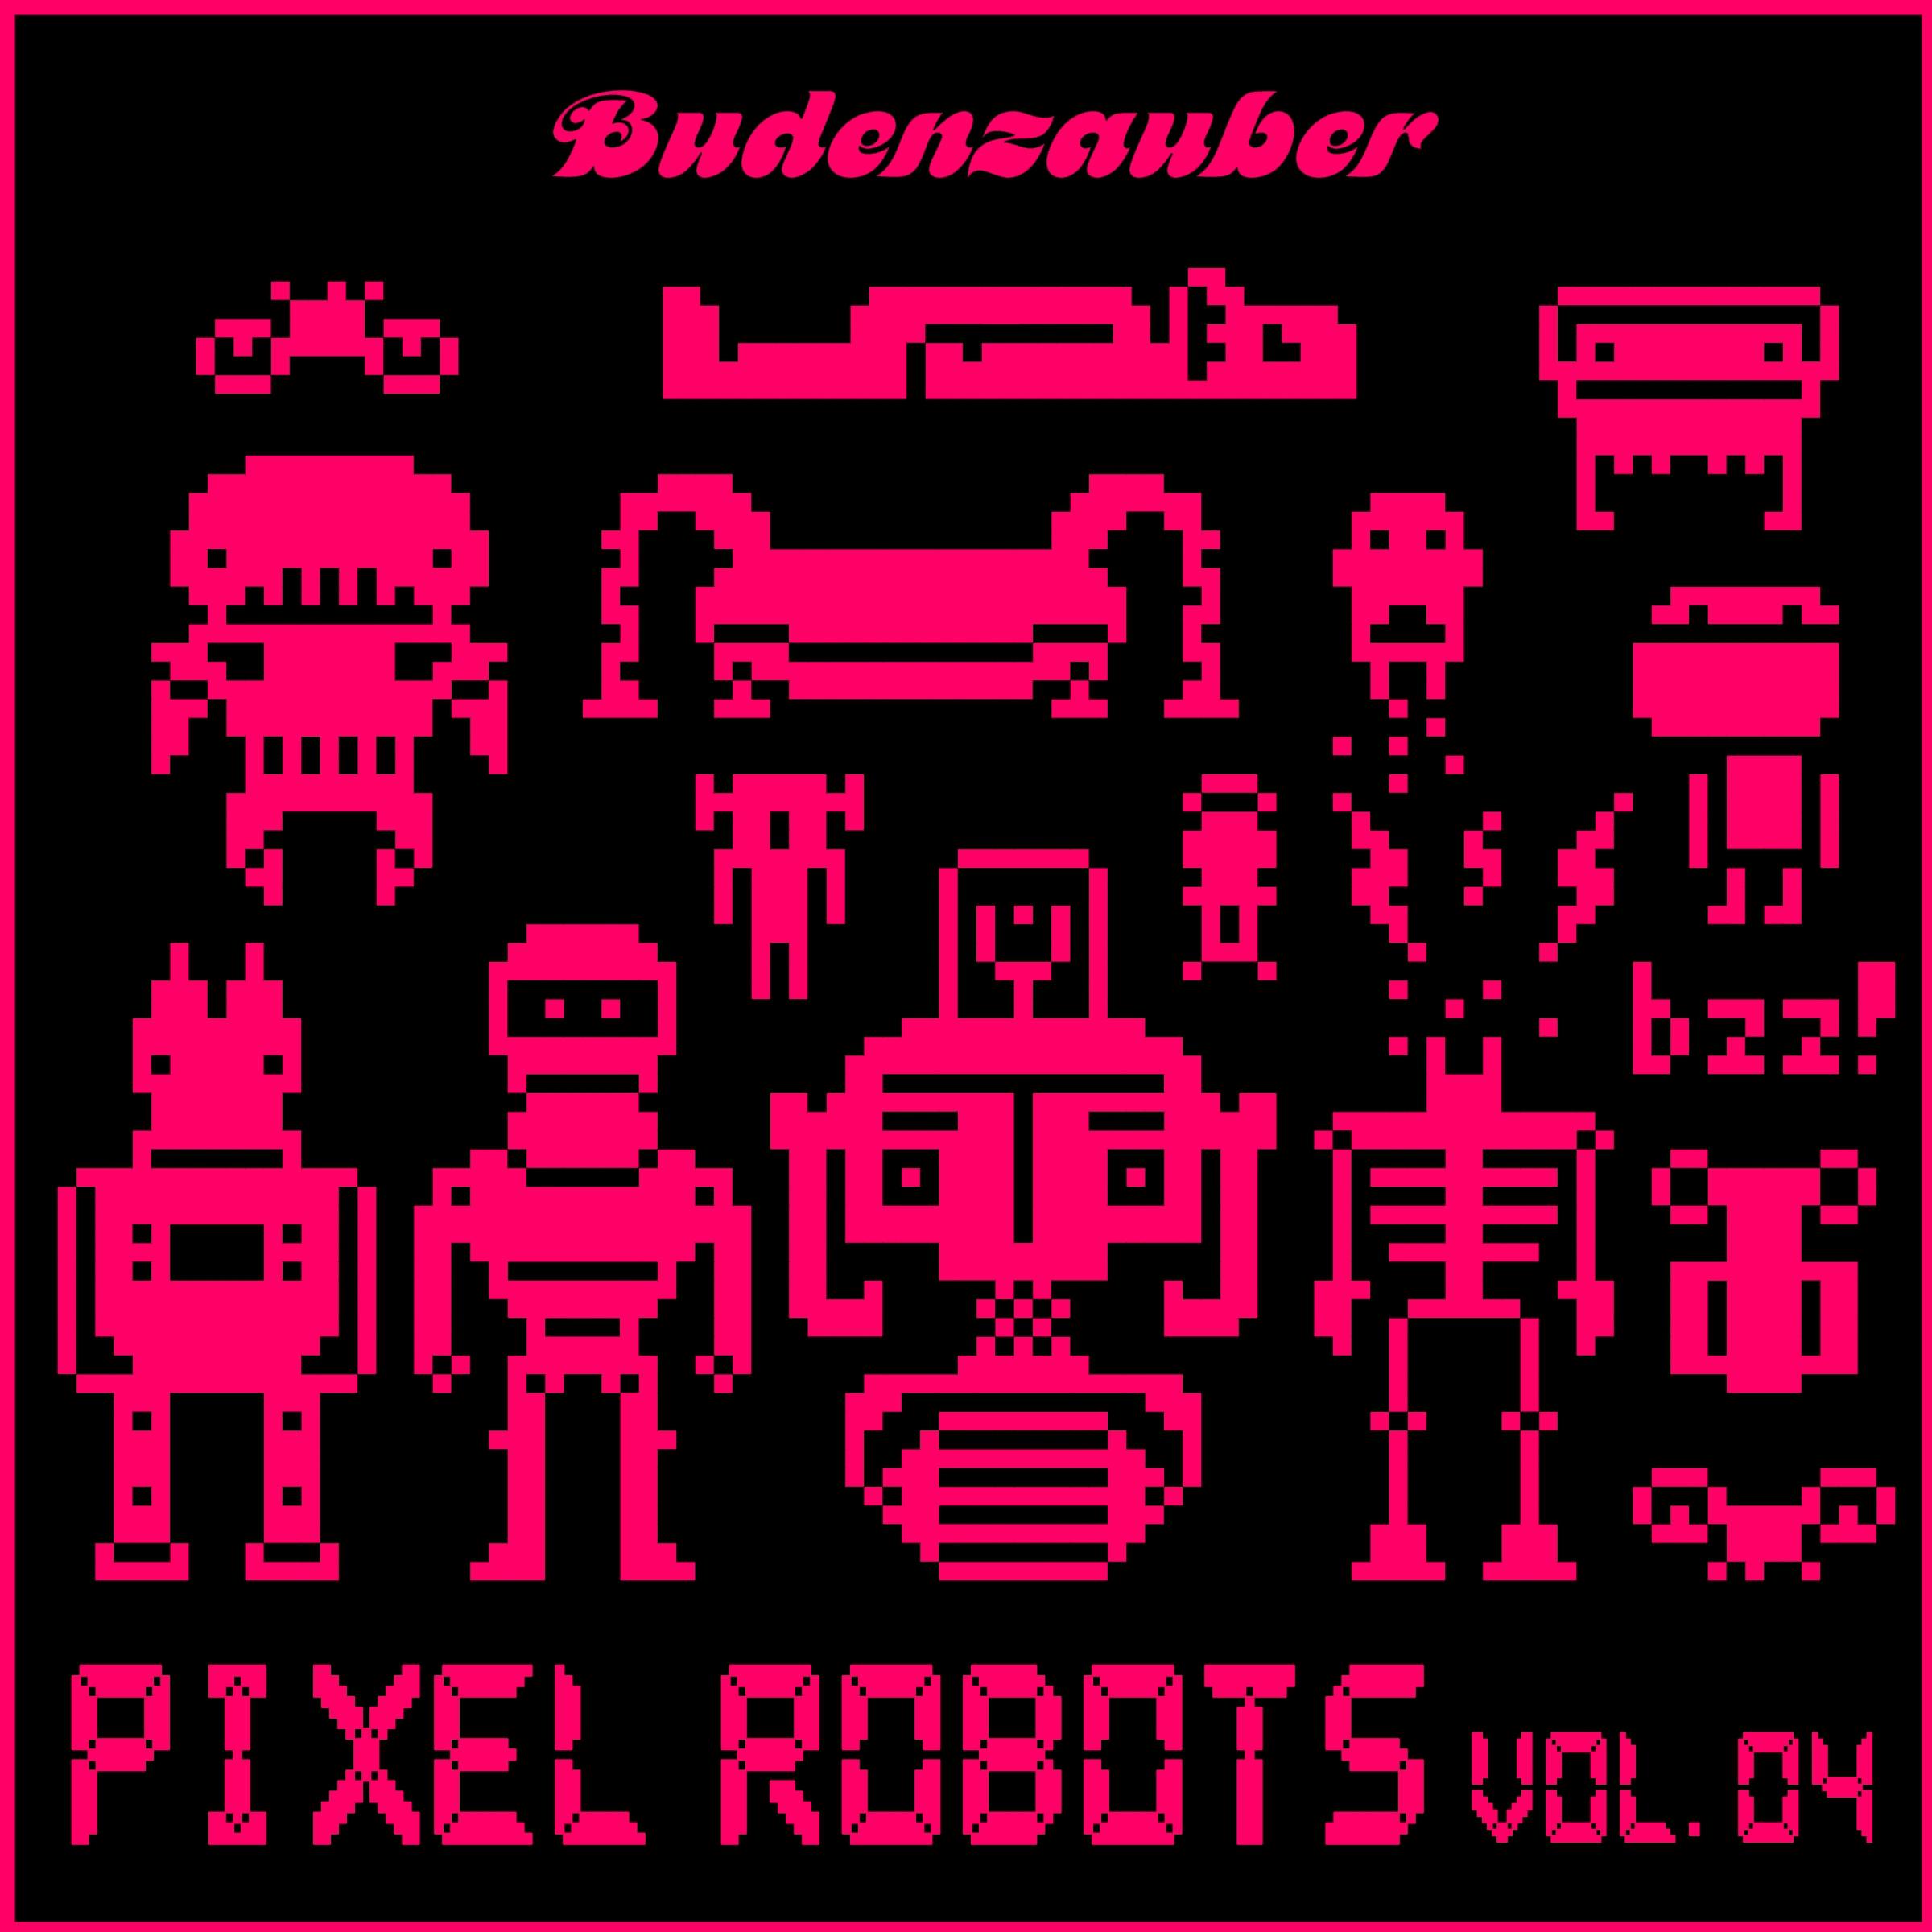 Pixel Robots, Vol. 4